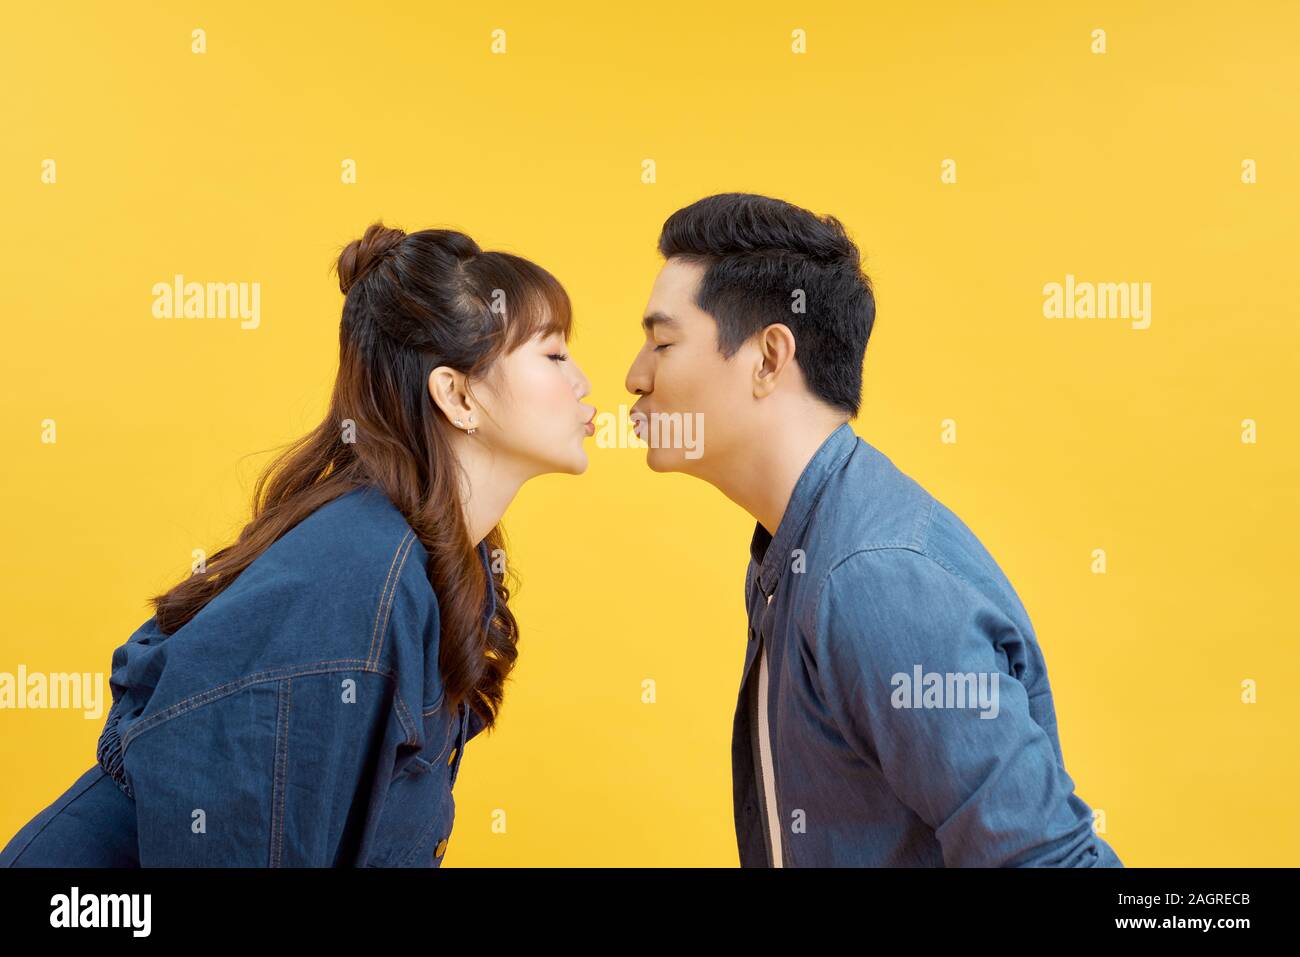 Profil Seite Foto von charmanten Gatten senden Air kiss über lebendige Farbe Hintergrund isoliert Stockfoto